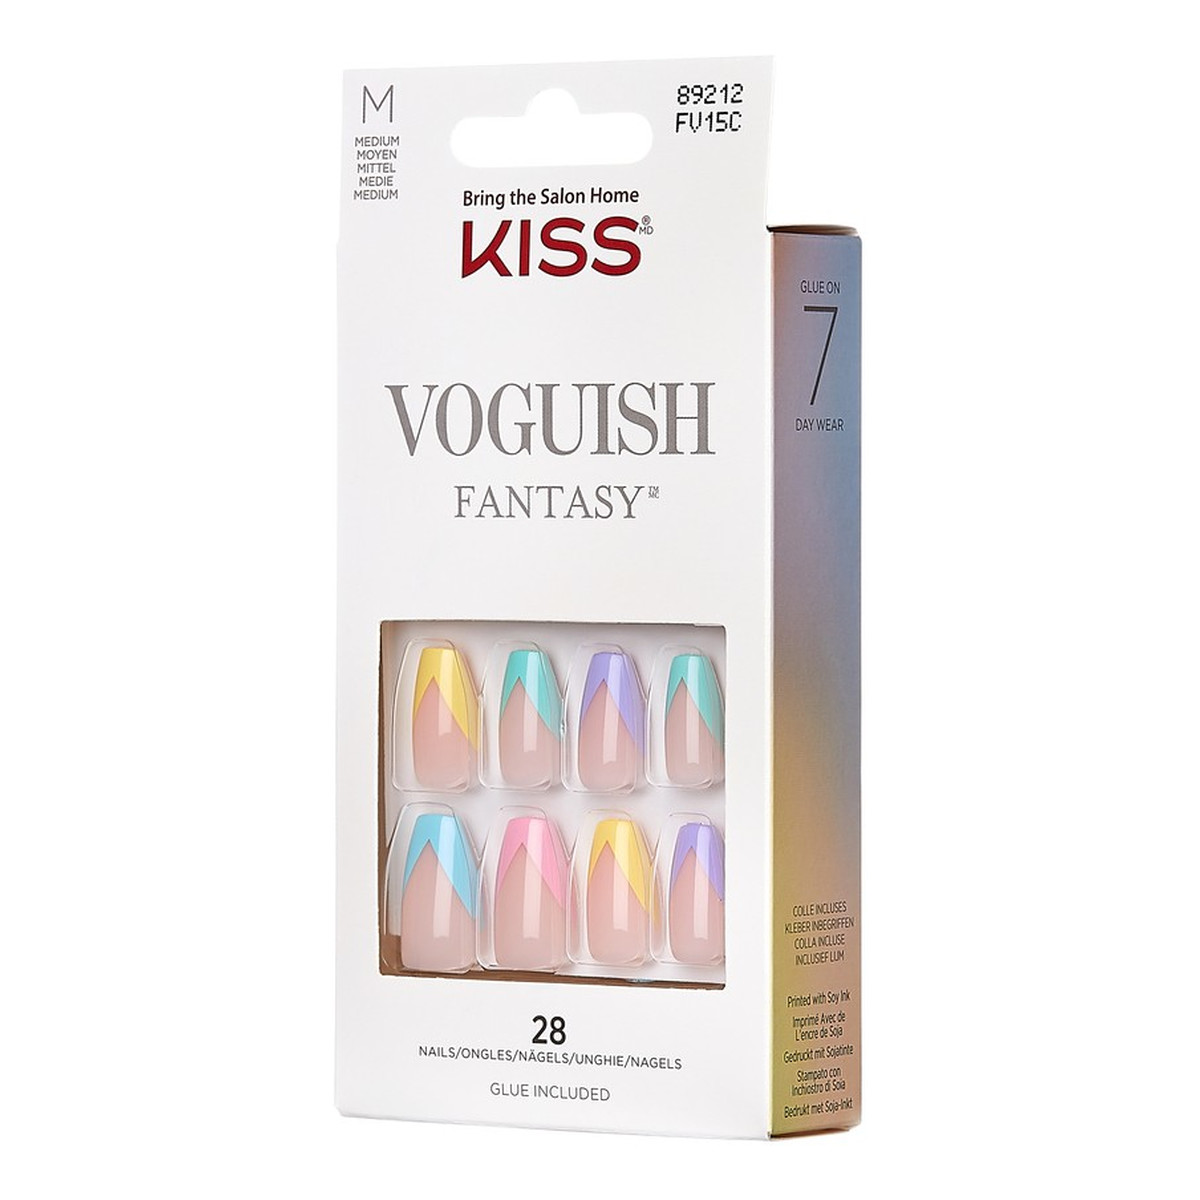 Kiss Sztuczne Paznokcie Voguish Fantasy - Candies (rozmiar M) 28szt.